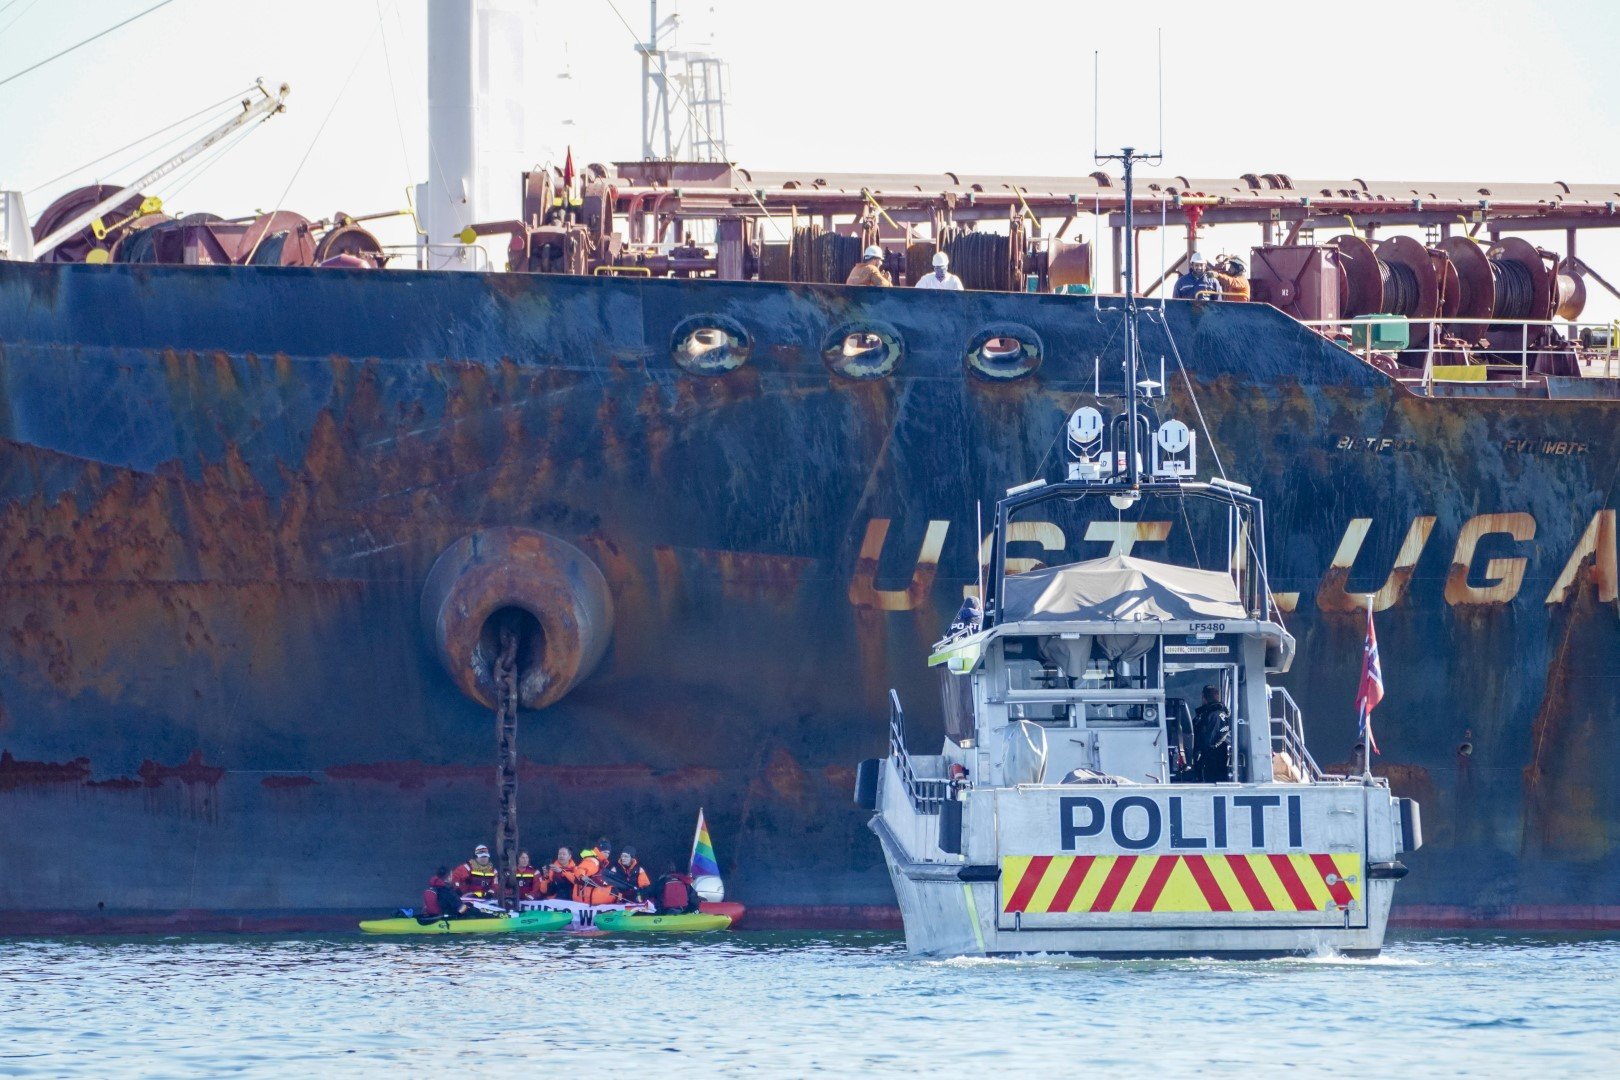 Полицейска лодка на местопроизшествието - Грийнпийс организира протест пред кораба Уст Луга, превозващ руски петрол за Норвегия, в Осгардстранд, понеделник, 25 април 2022 г.